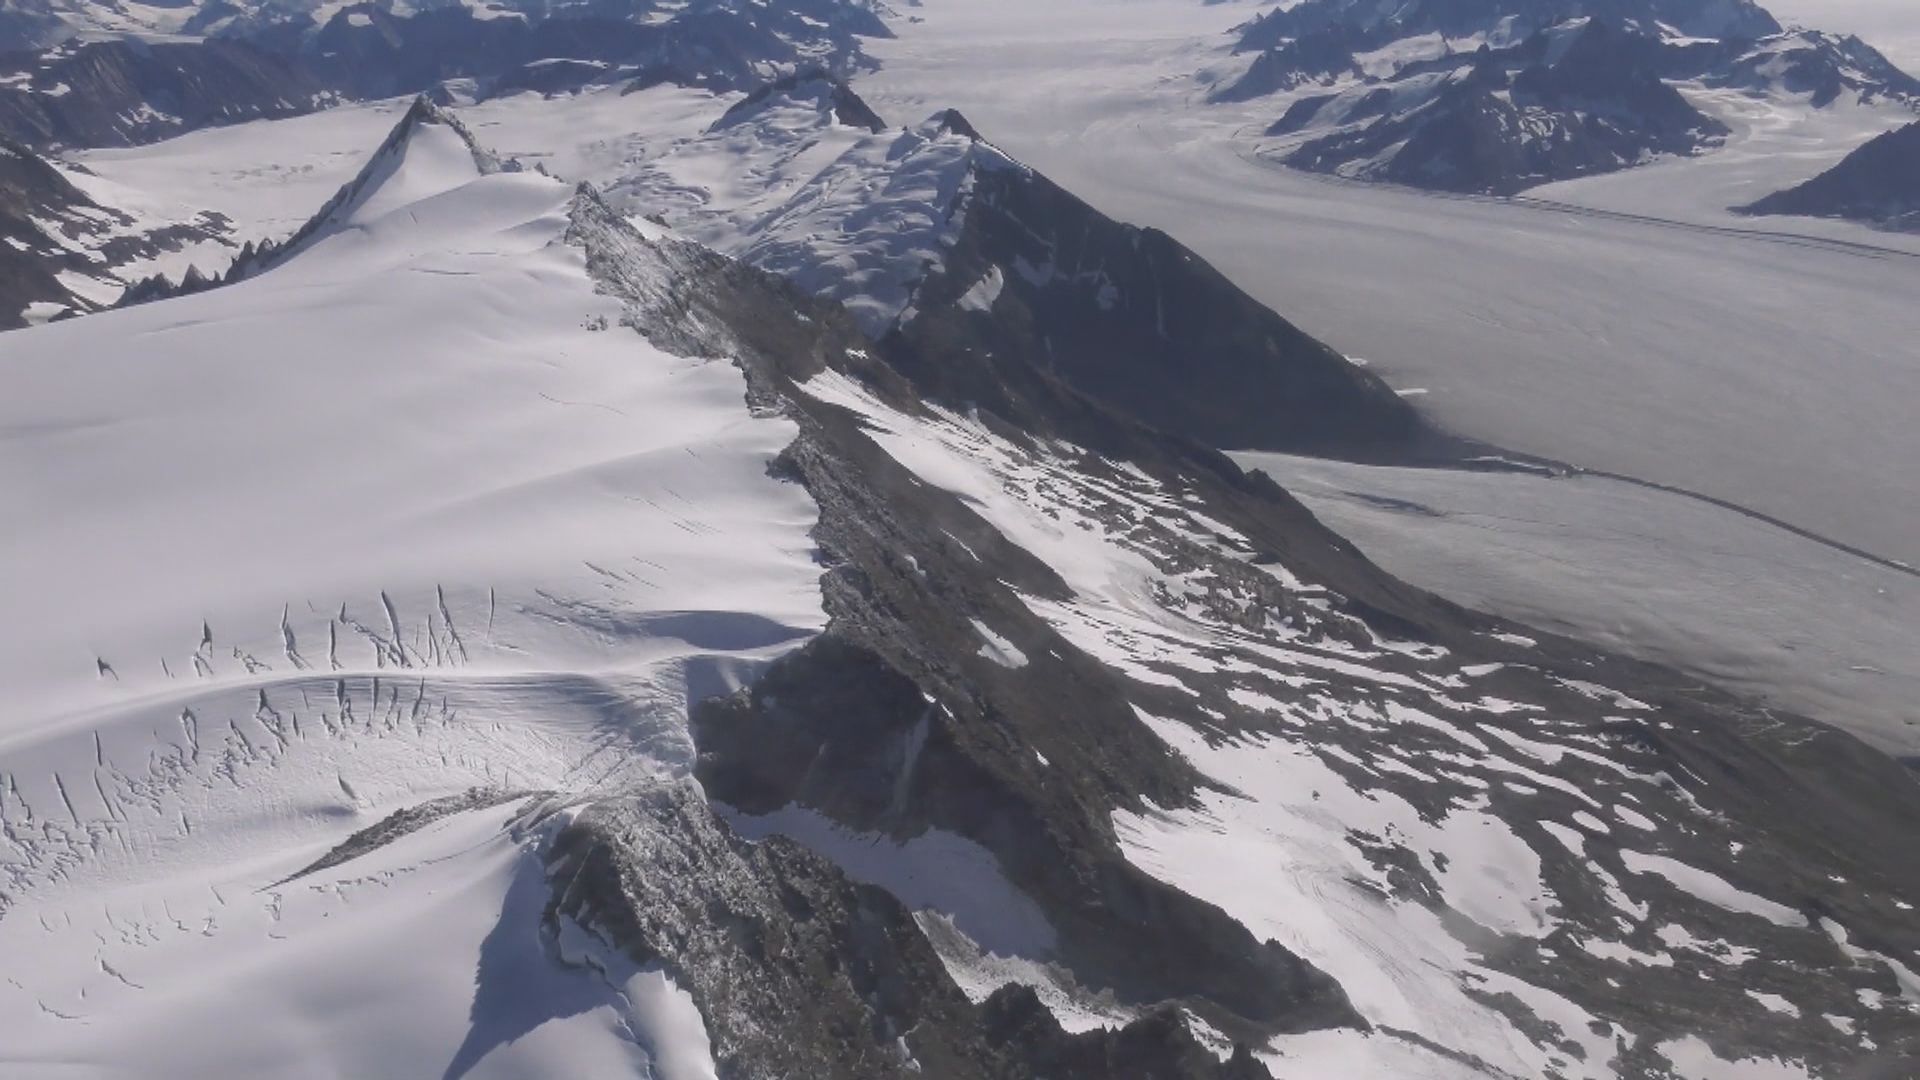 【環球薈報】喜馬拉雅山冰川近四十年融化速度比過去數百年快十倍